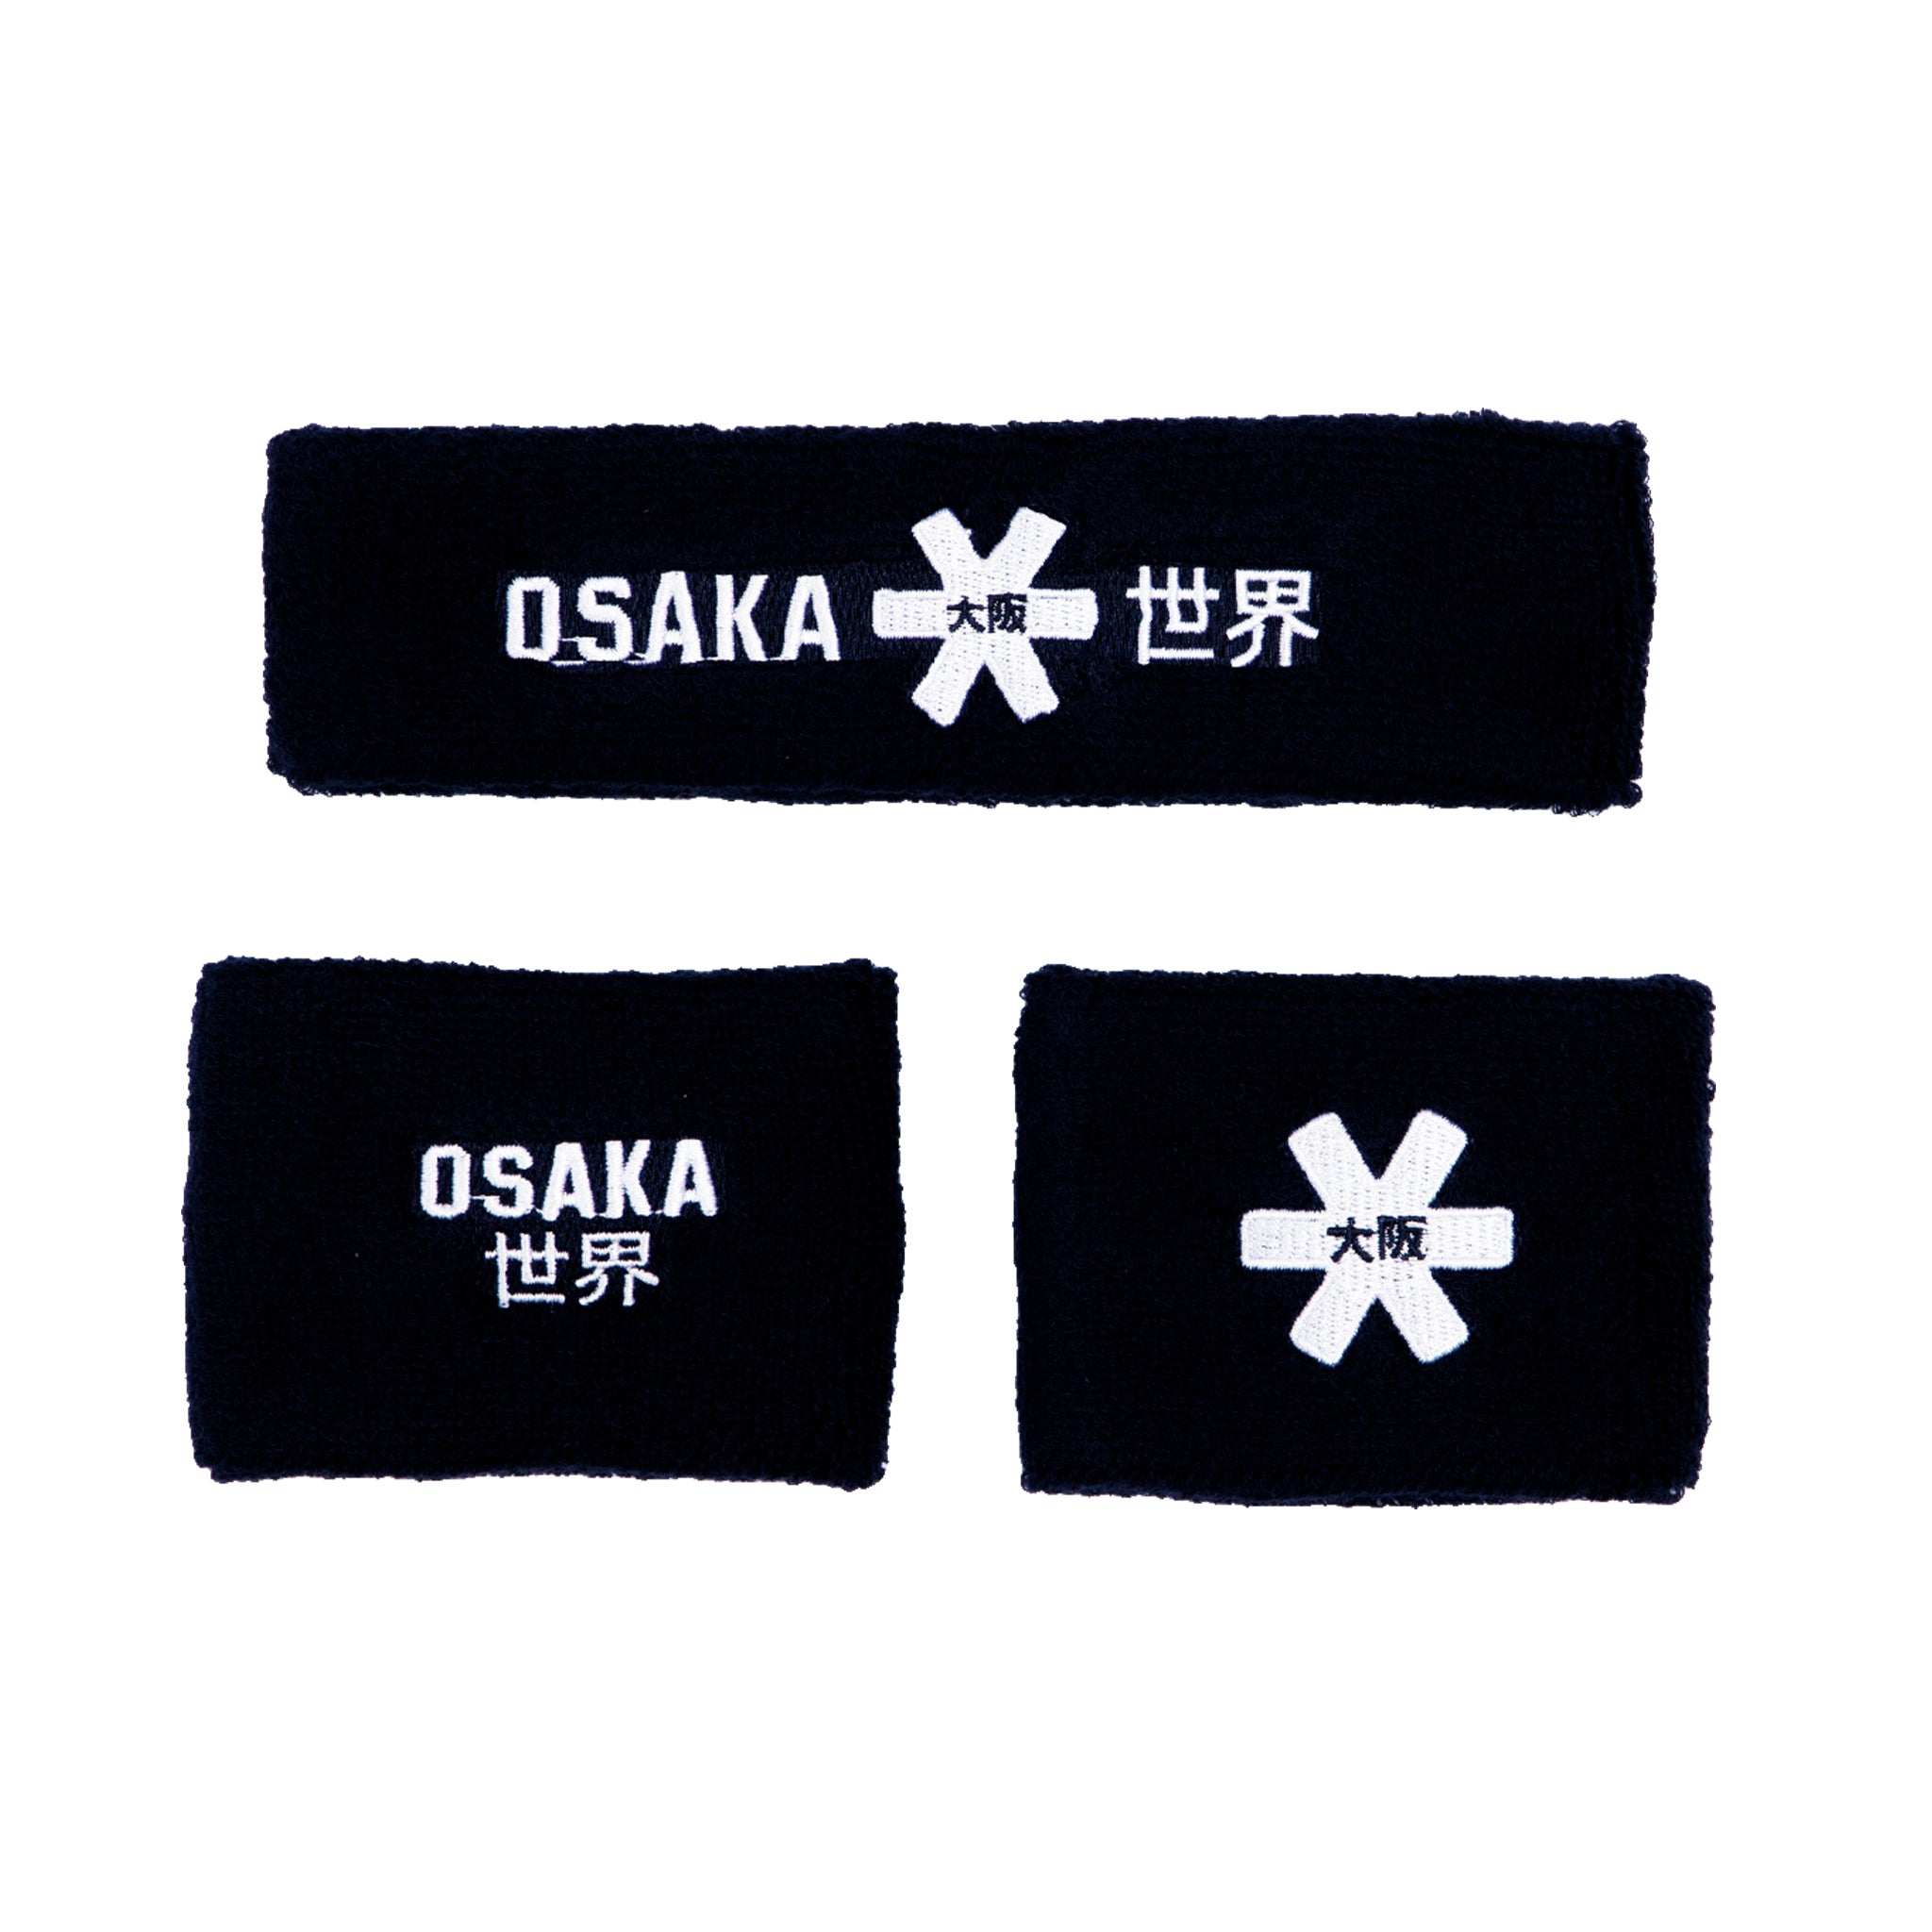 Osaka Sweatband Set - Navy